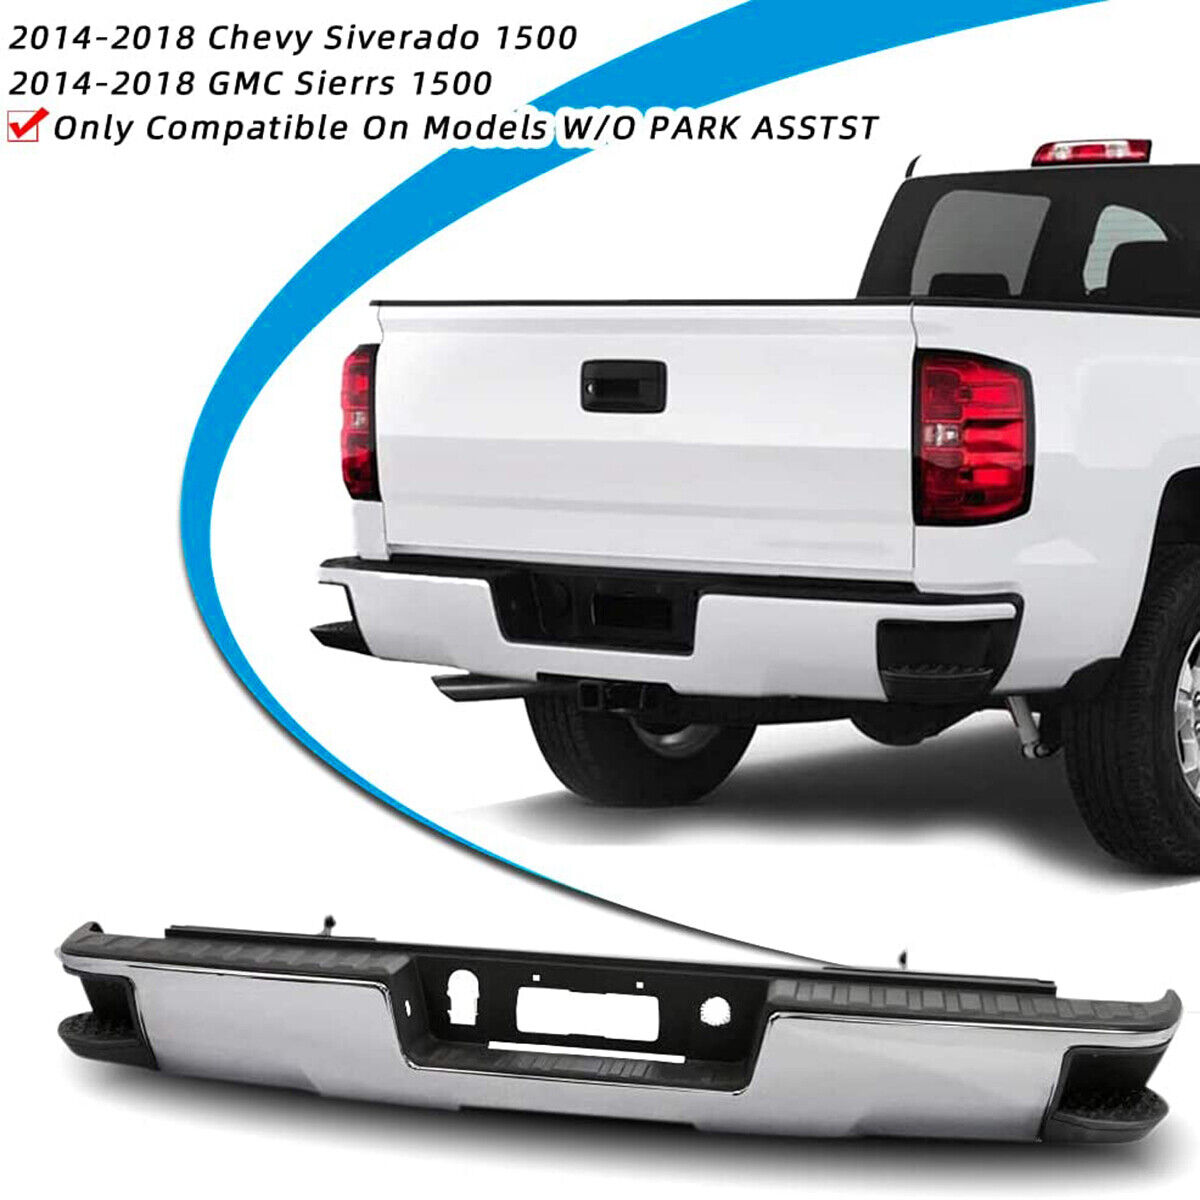 Chrome Rear Step Bumper Assembly For 2014-2018 Chevy Silverado GMC Sierra 1500